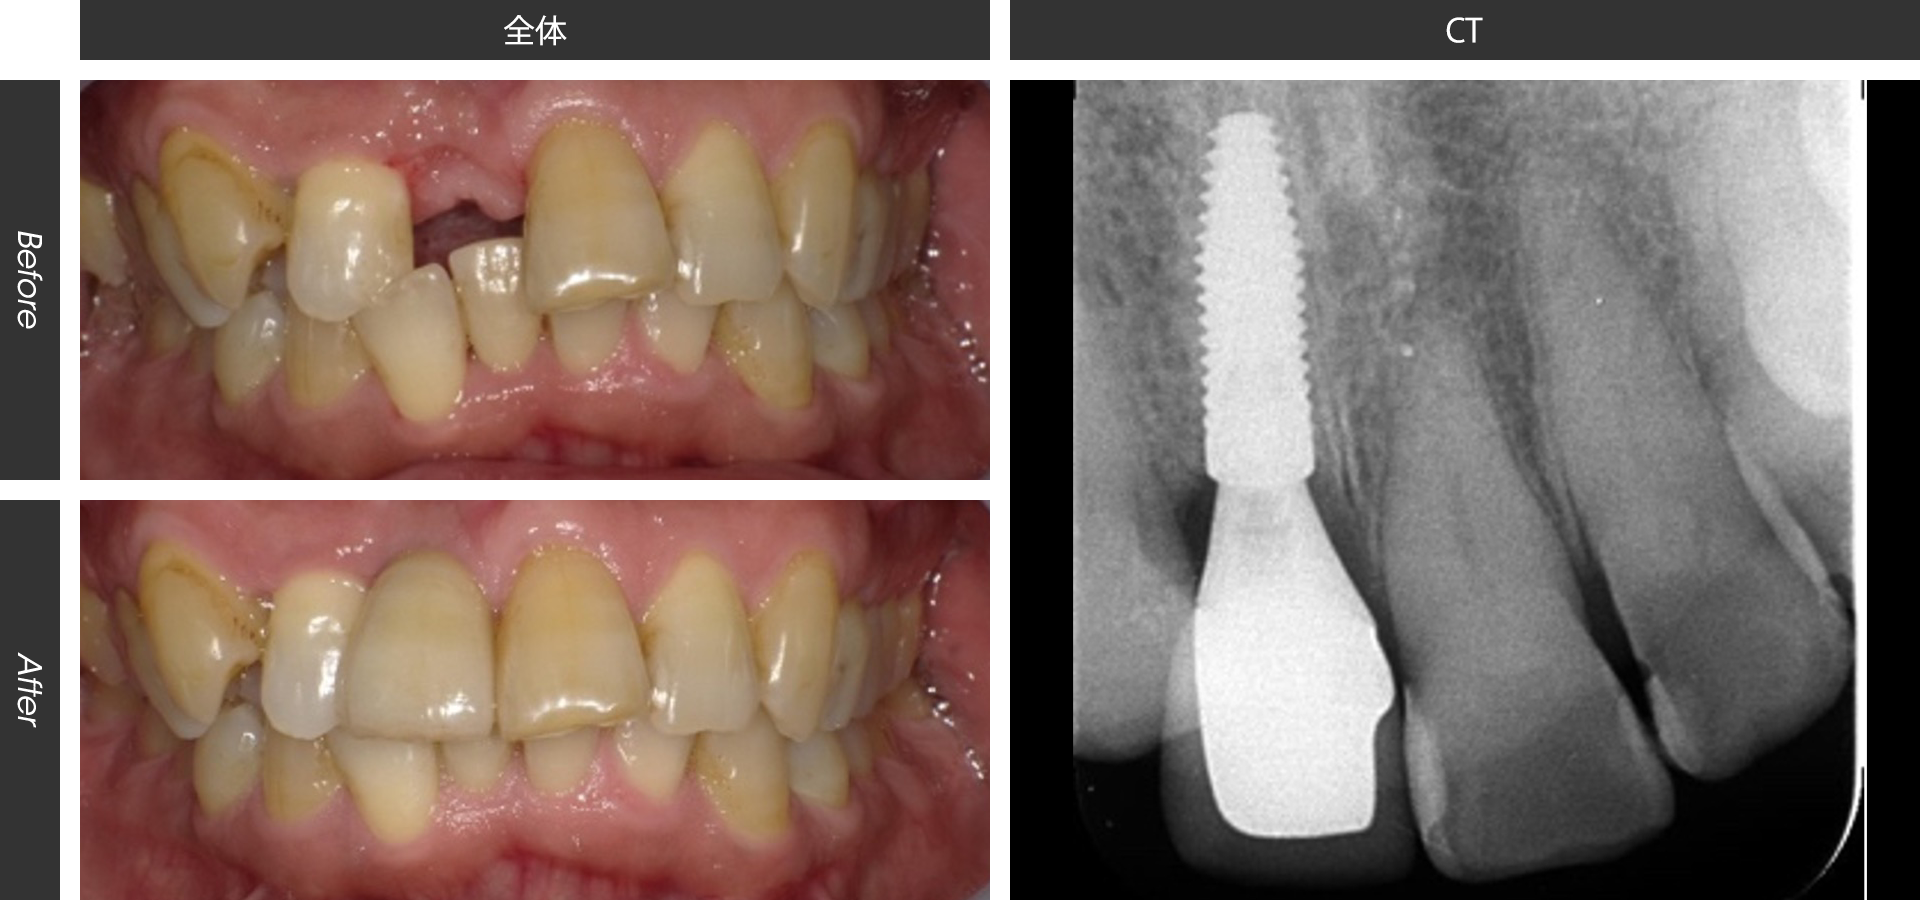 歯列不正がある患者様への上顎前歯部インプラント治療